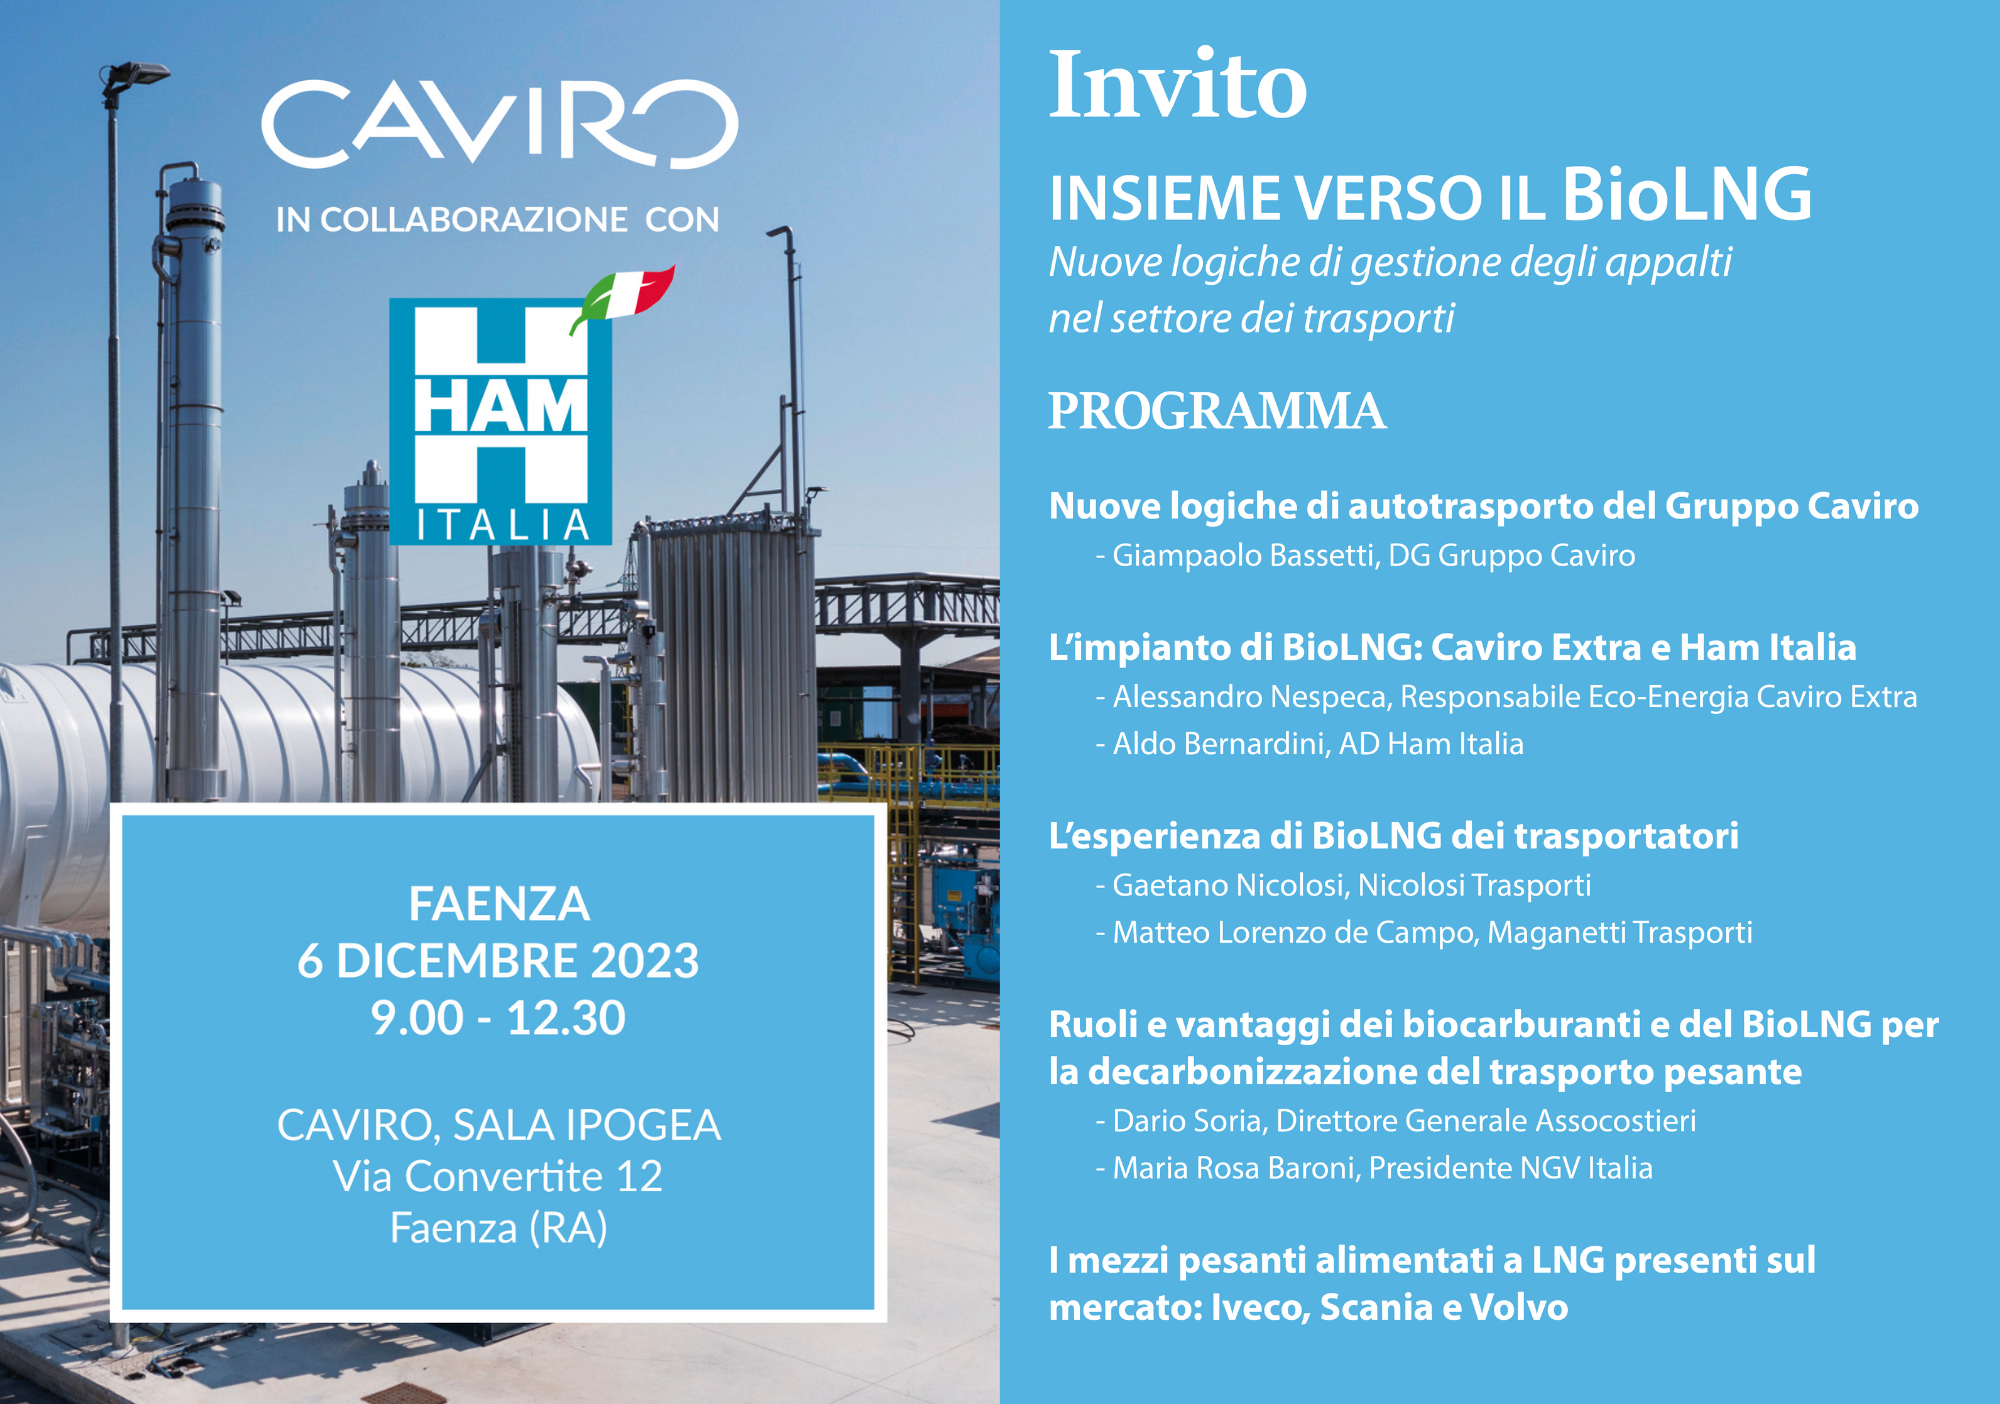 Invito convegno BioLNG CAVIRO 6 dicembre 2023